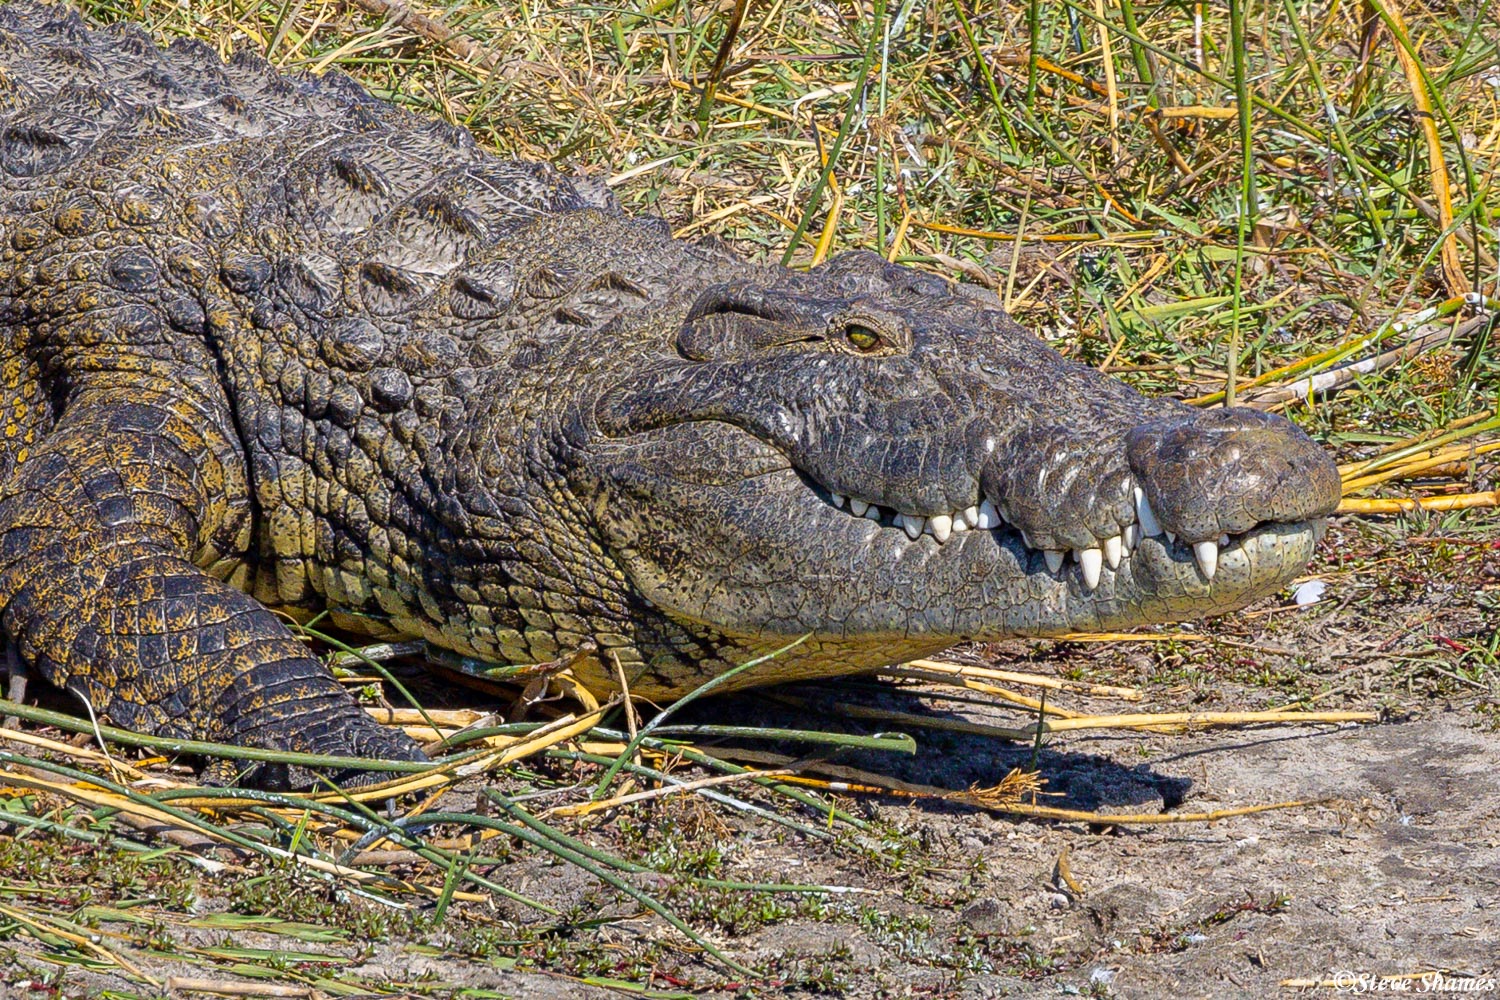 Boteti River crocodile close up.